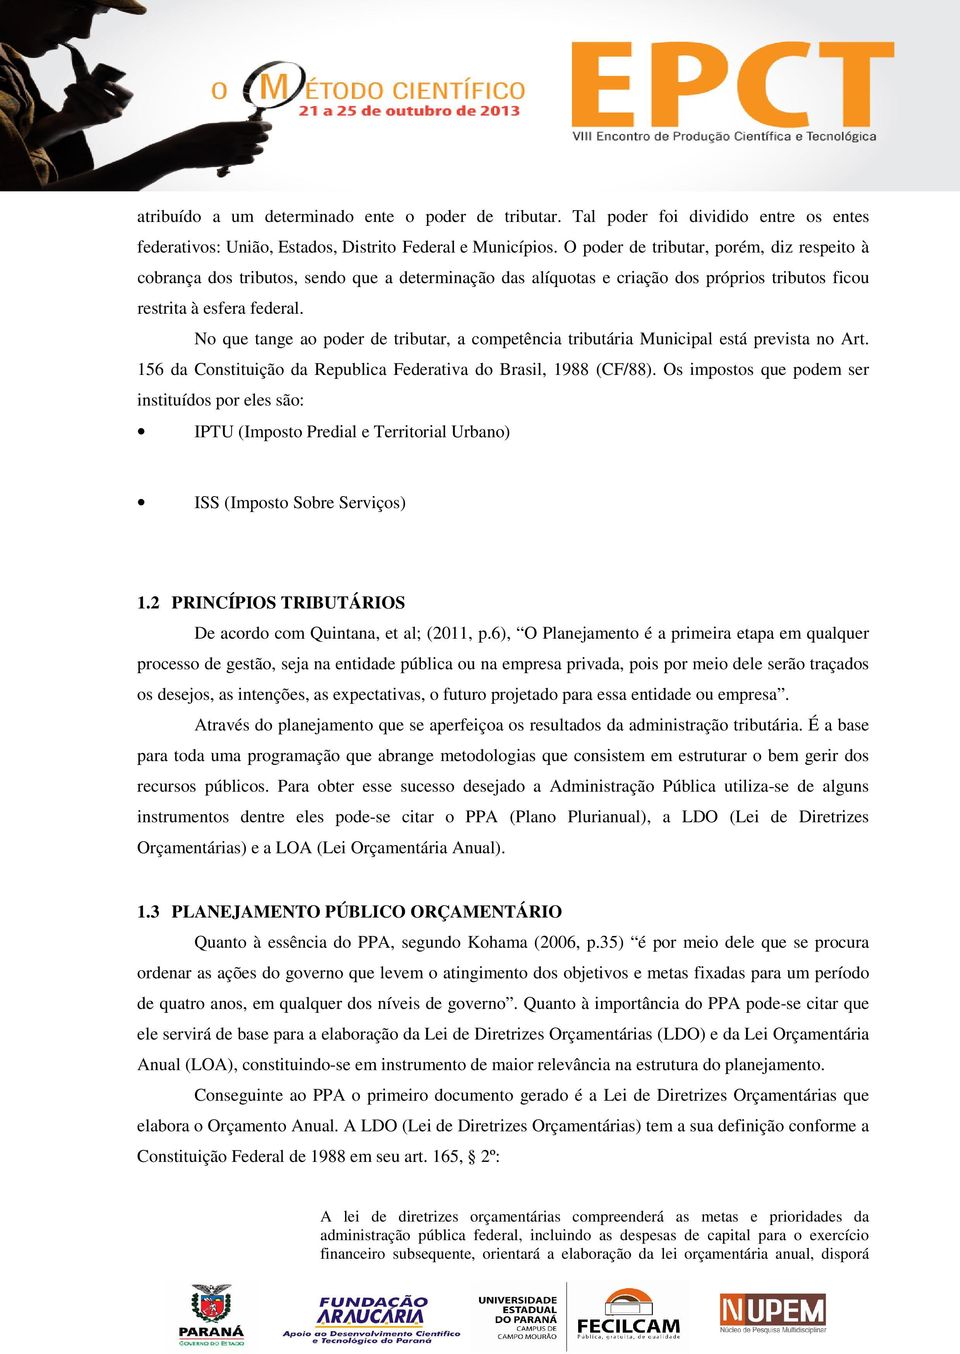 No que tange ao poder de tributar, a competência tributária Municipal está prevista no Art. 156 da Constituição da Republica Federativa do Brasil, 1988 (CF/88).